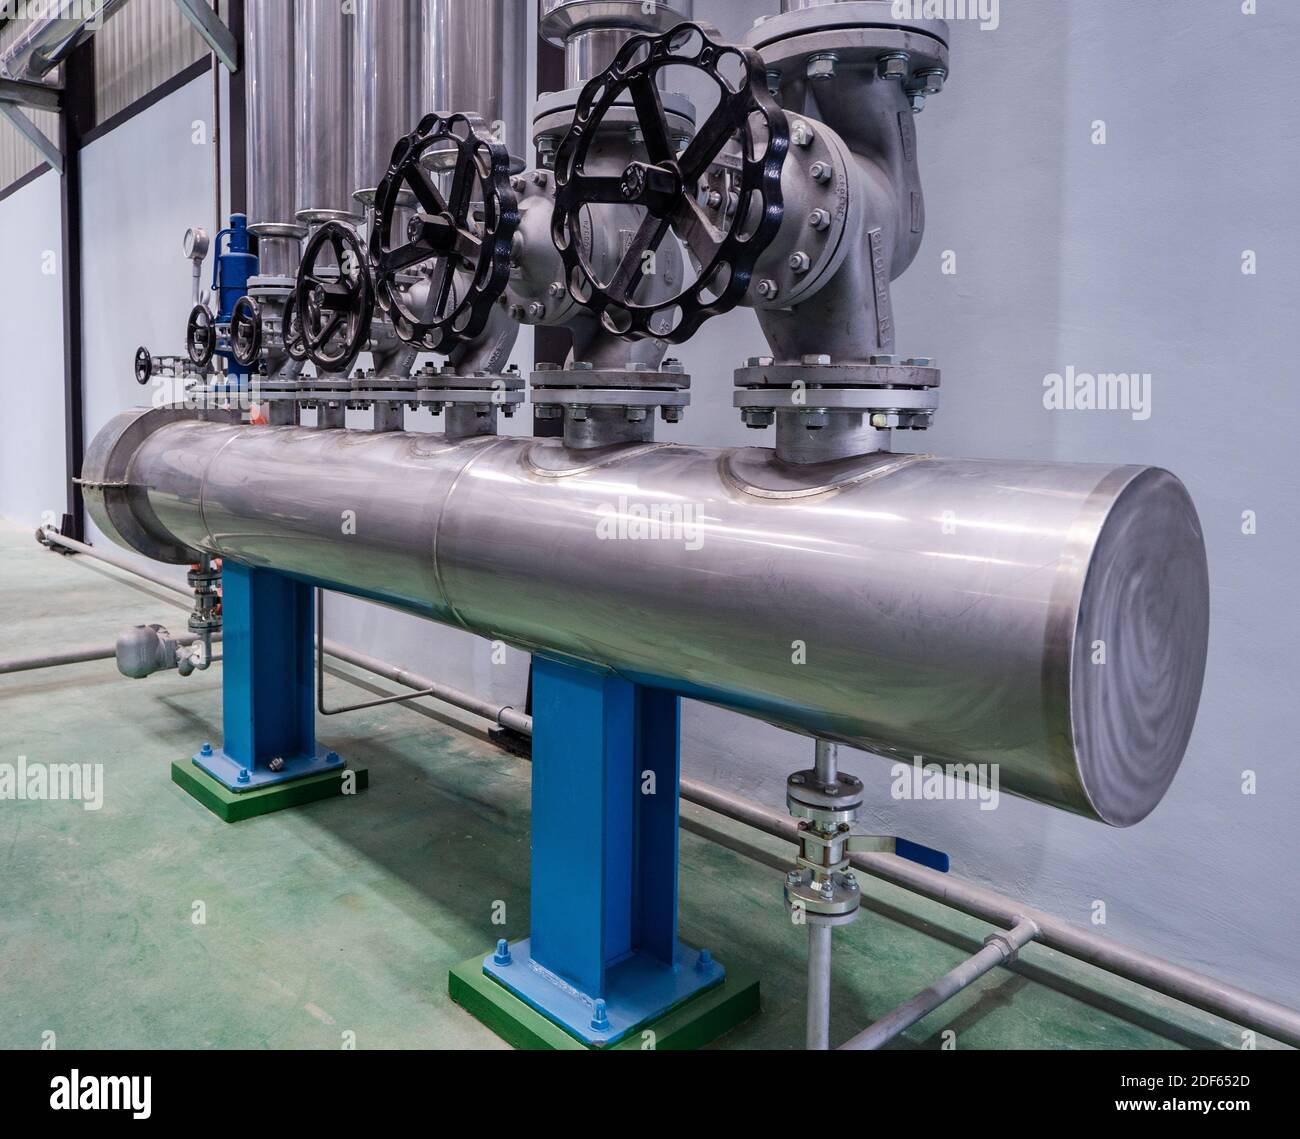 Collettore a vapore presso l'impianto di lavorazione industriale, utilizzato per distribuire il vapore sotto pressione a diversi macchinari. Foto Stock